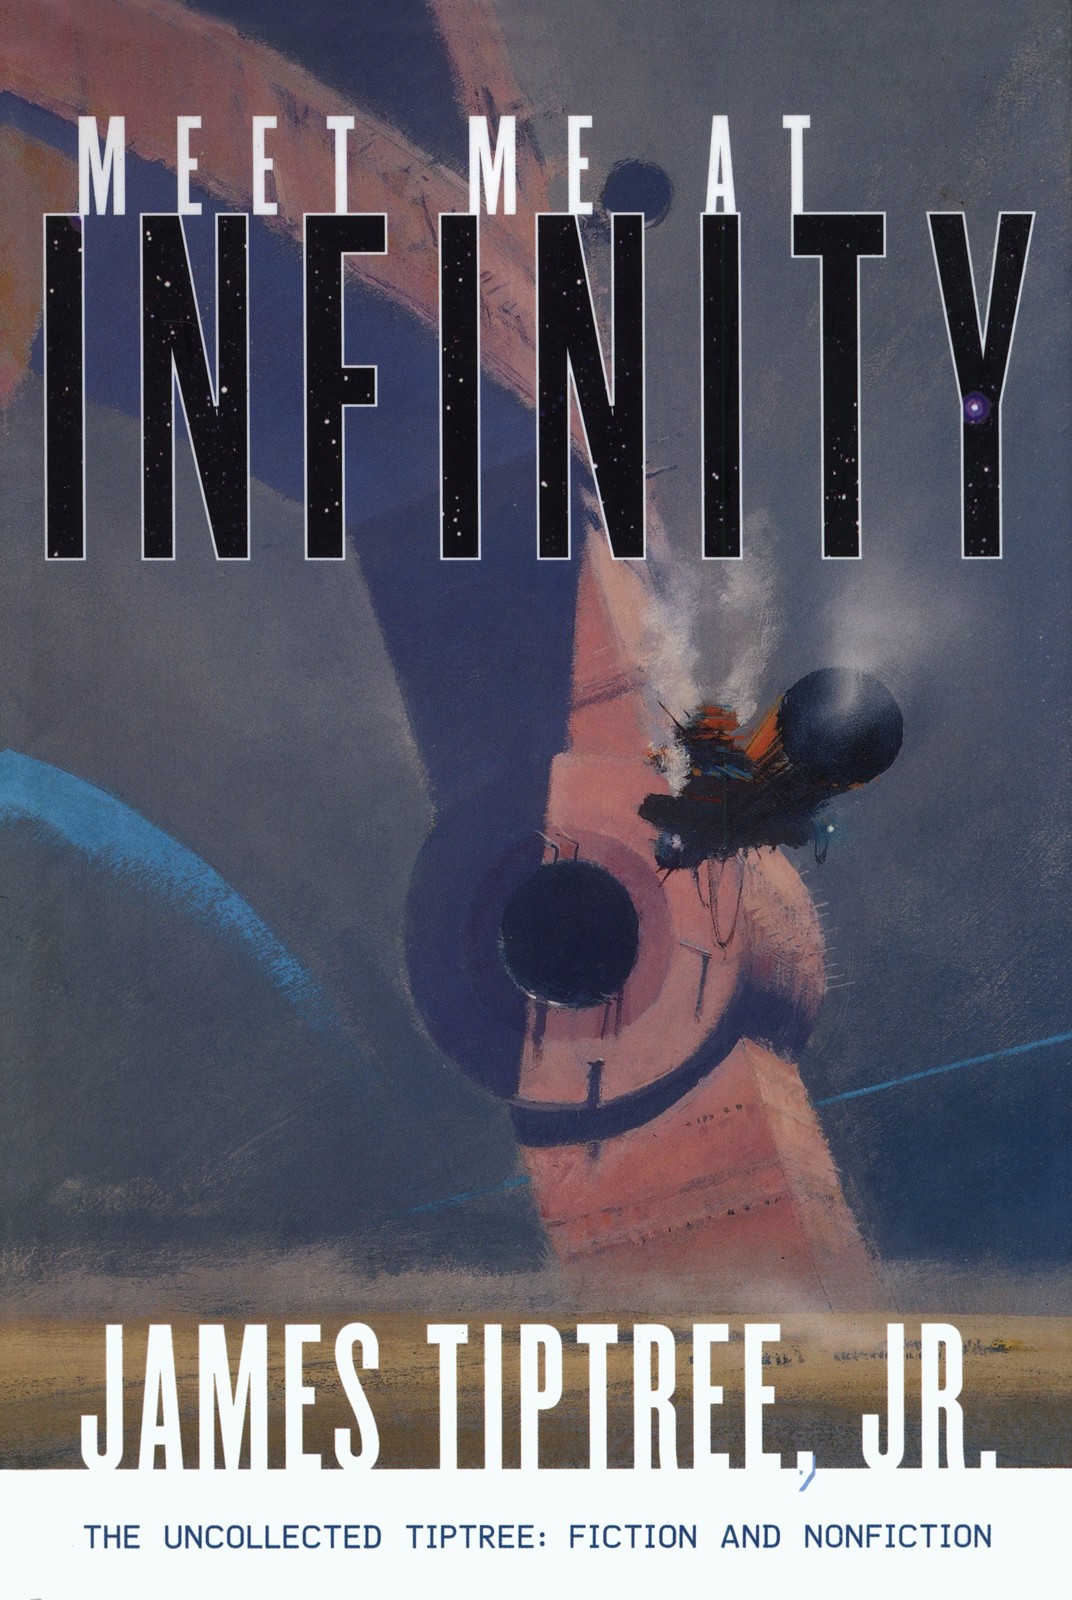 Meet Me at Infinity (2015) by James Tiptree Jr.